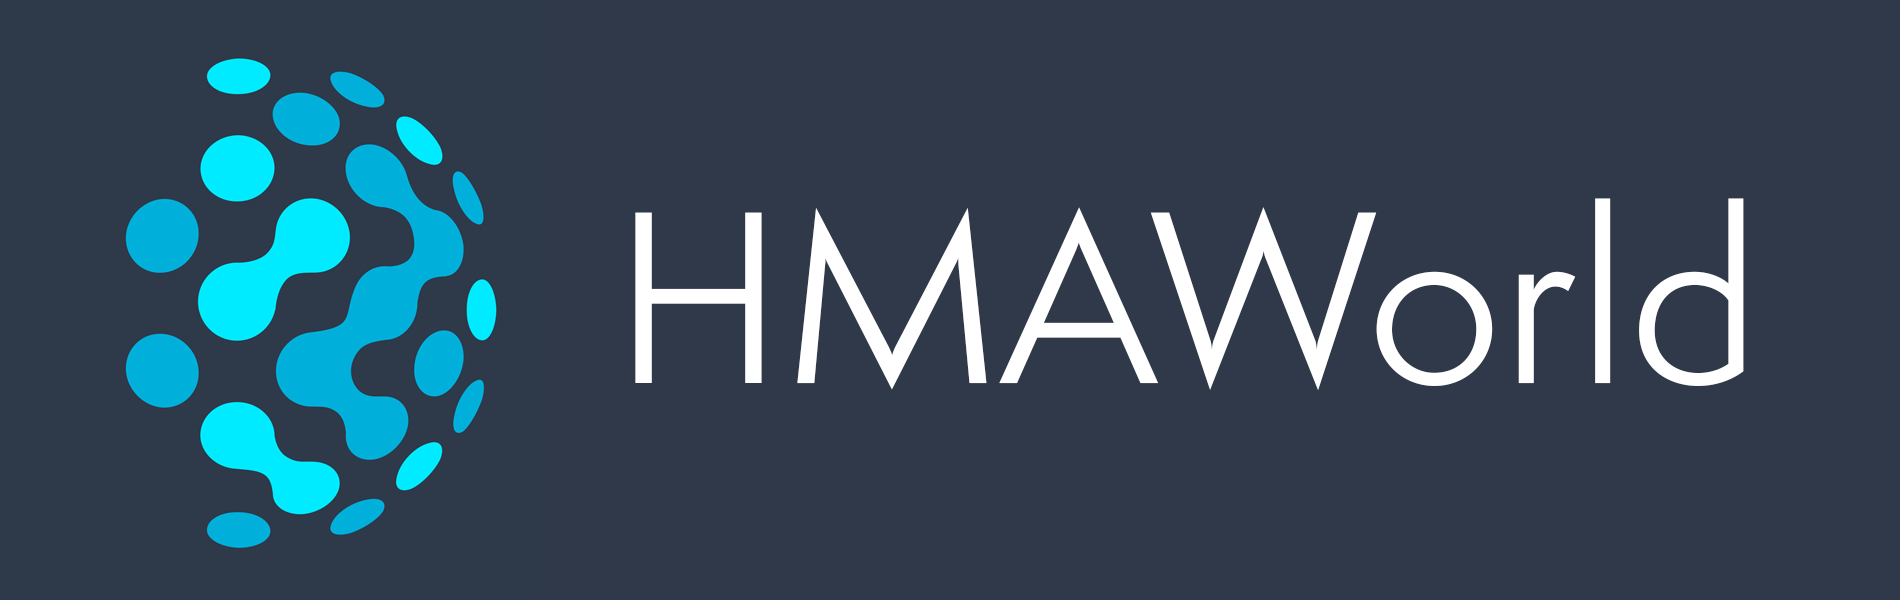 hma world logo